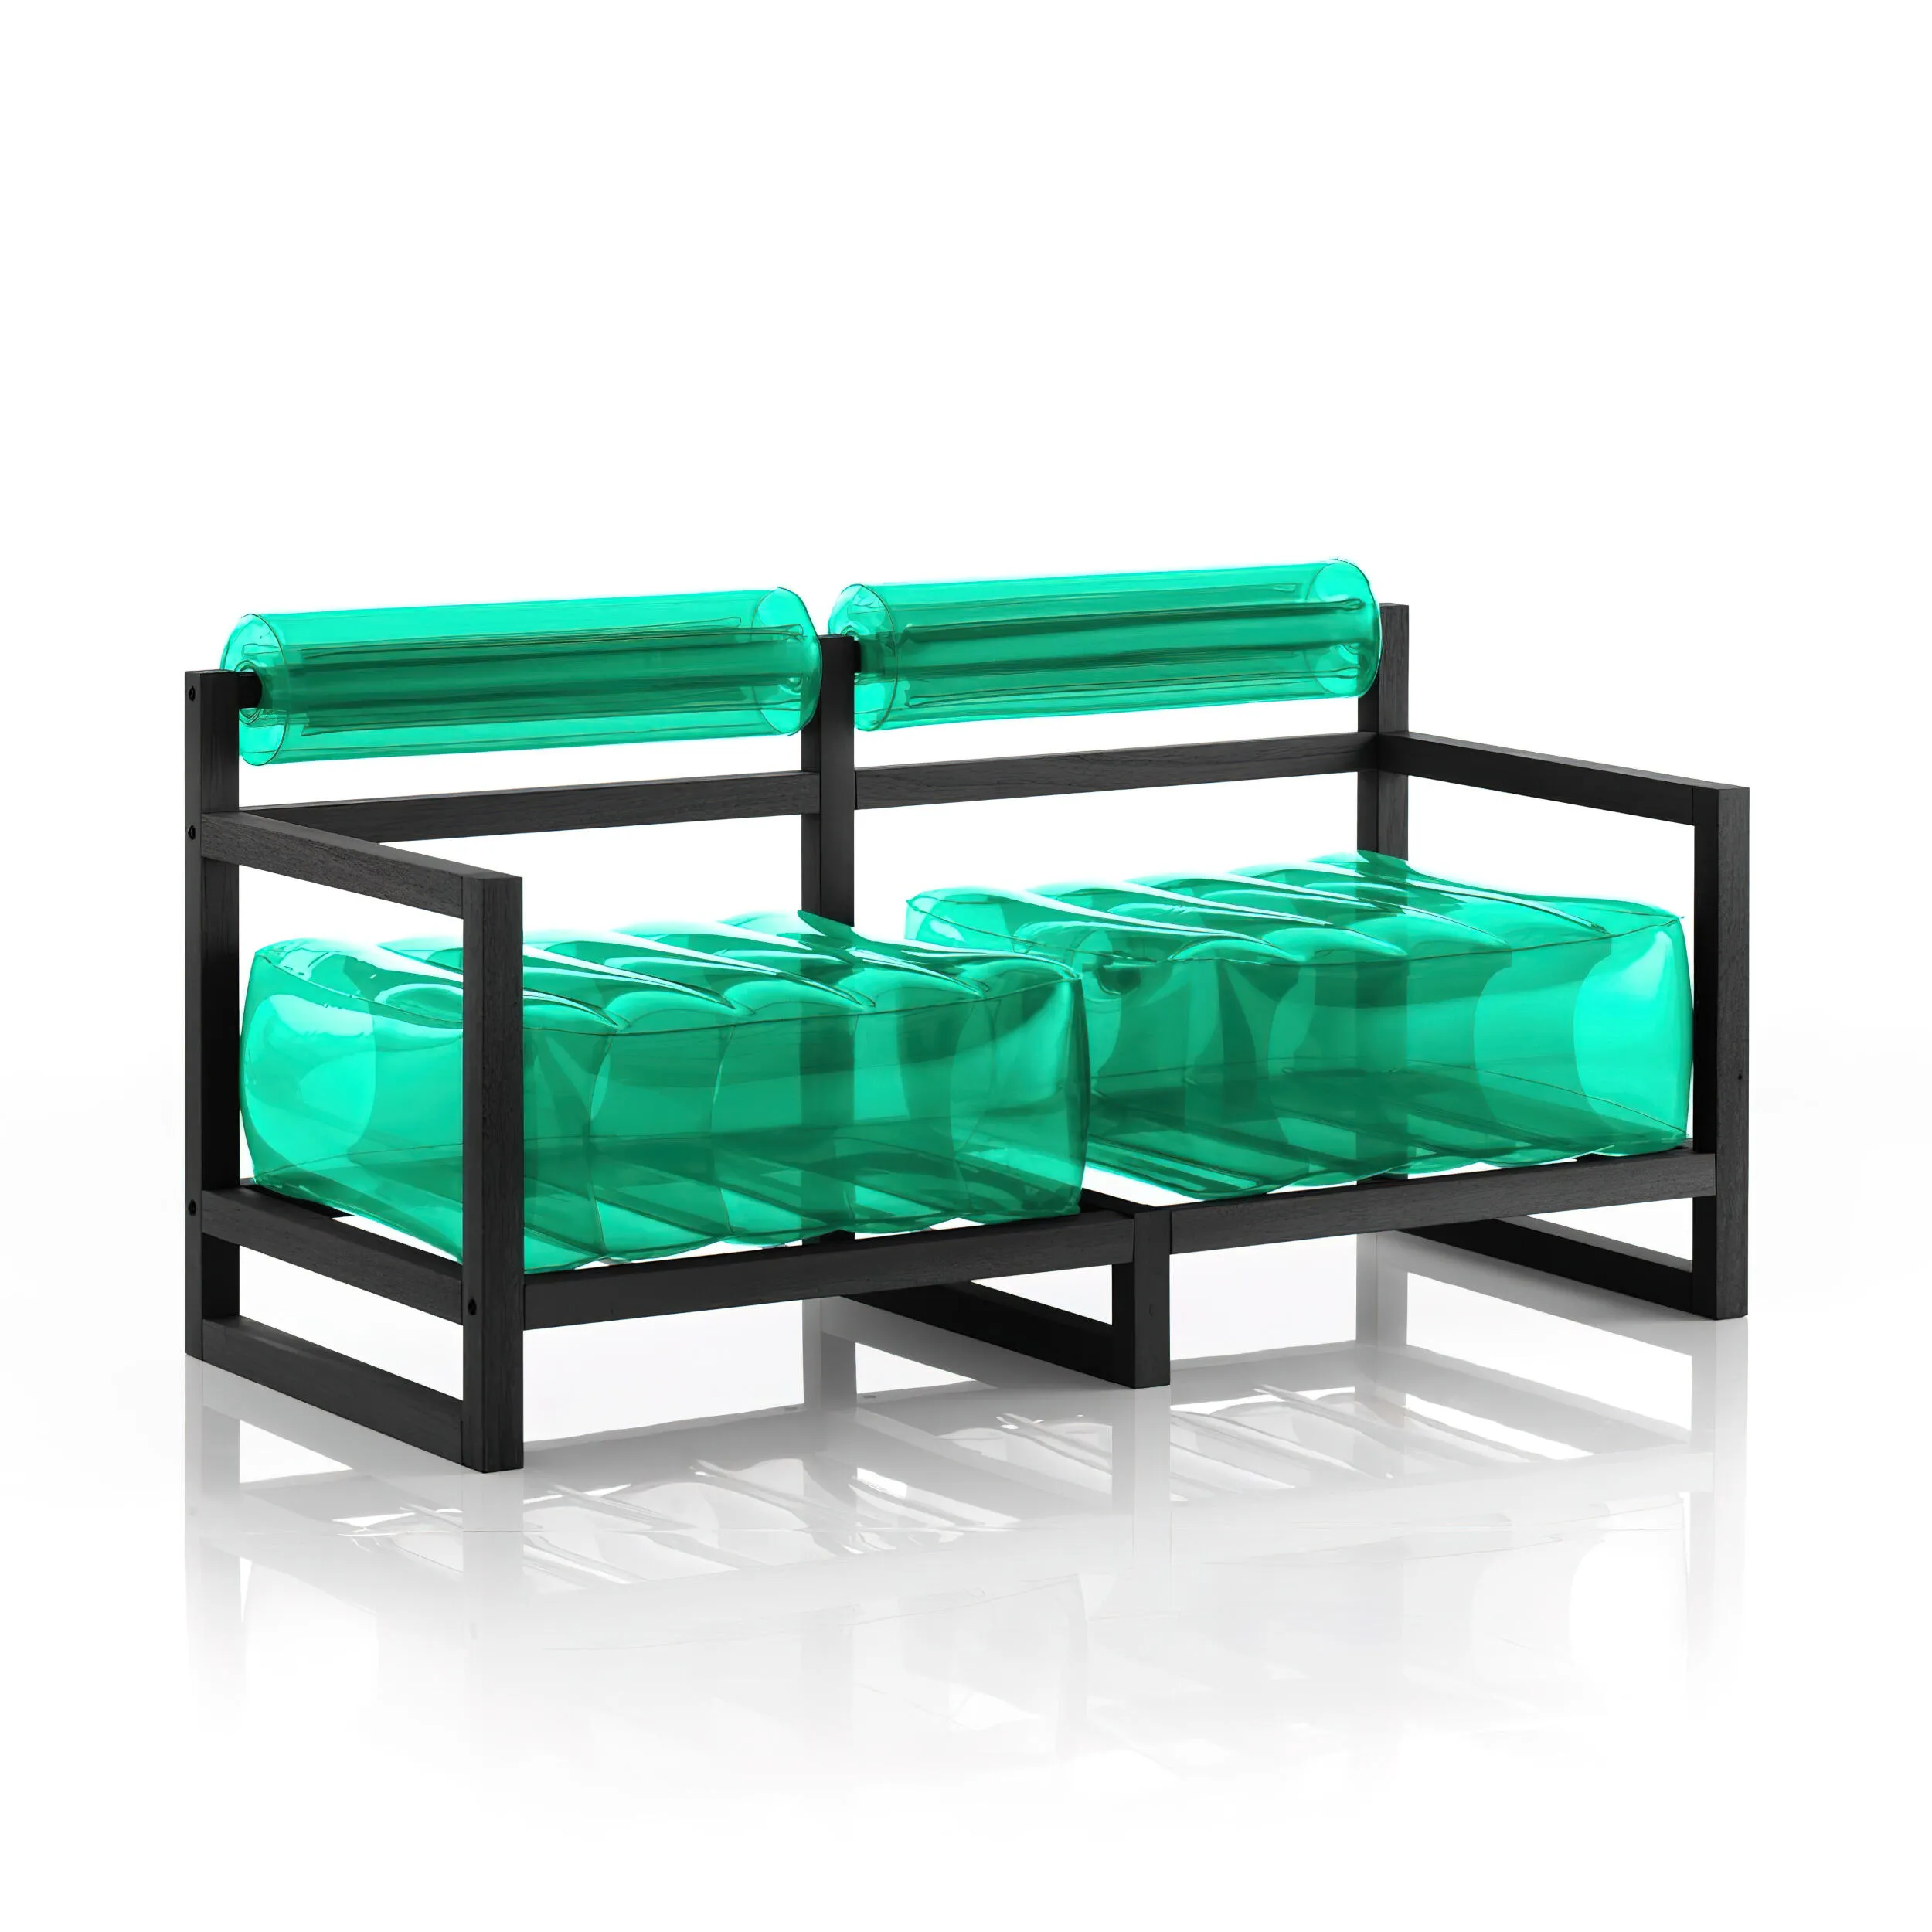 divano Yoko eko struttura in legno nero, dimensioni 62x191xH70 cm peso 18,7 kg, seduta gonfiabile in TPU colore verde